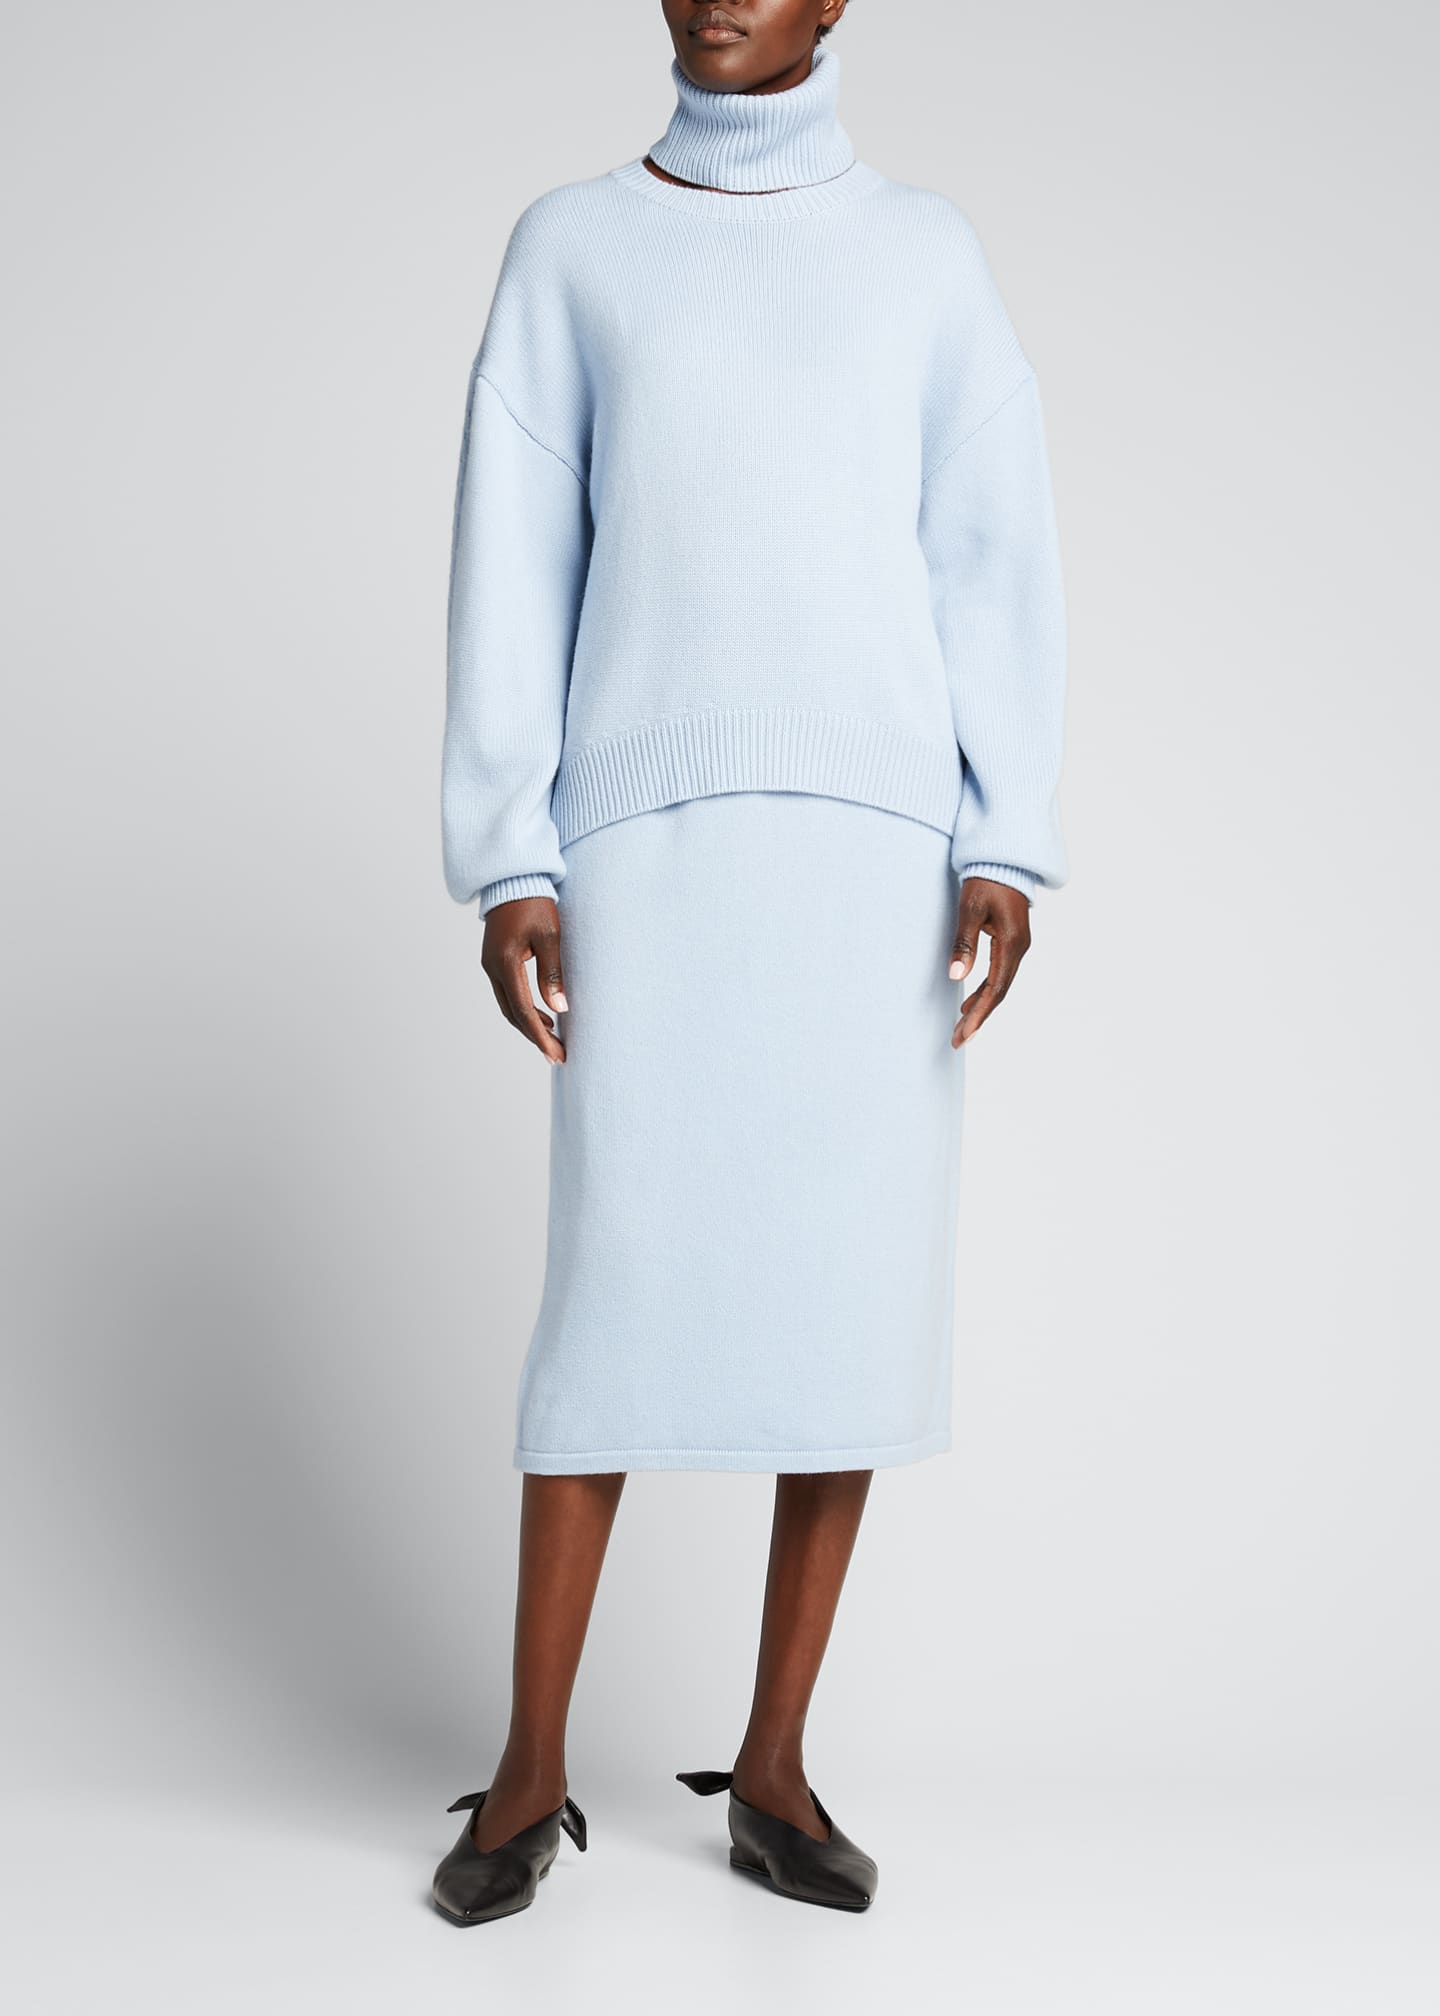 Tibi Cashmere Sweater Straight Pull-On Skirt - Bergdorf Goodman